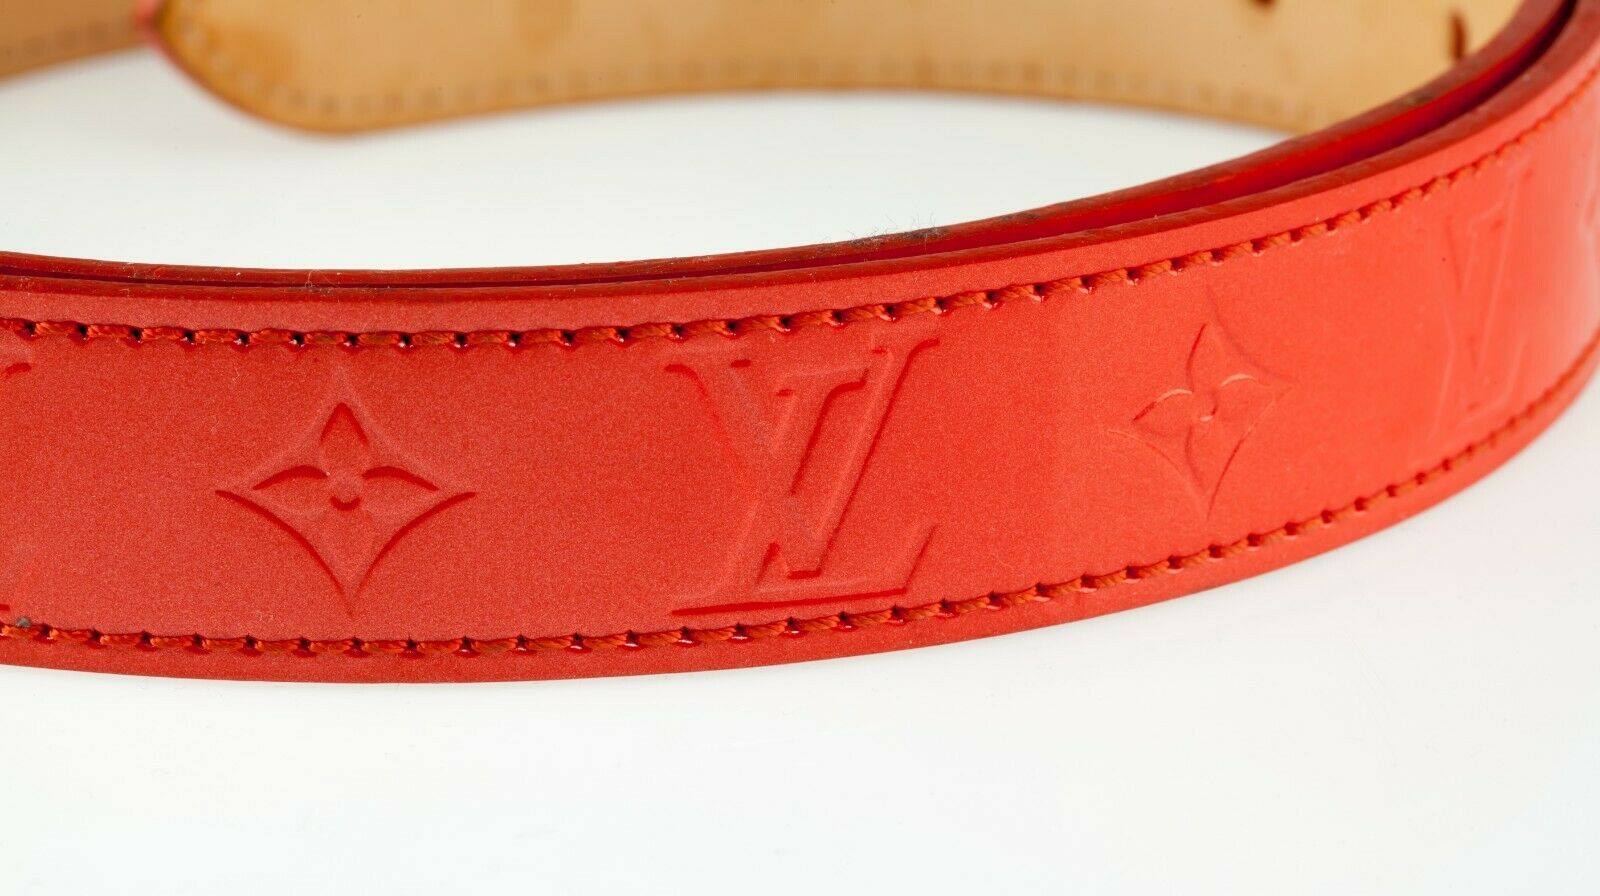 Louis Vuitton Ceinture Vernis Phoenix Patent Leather Belt